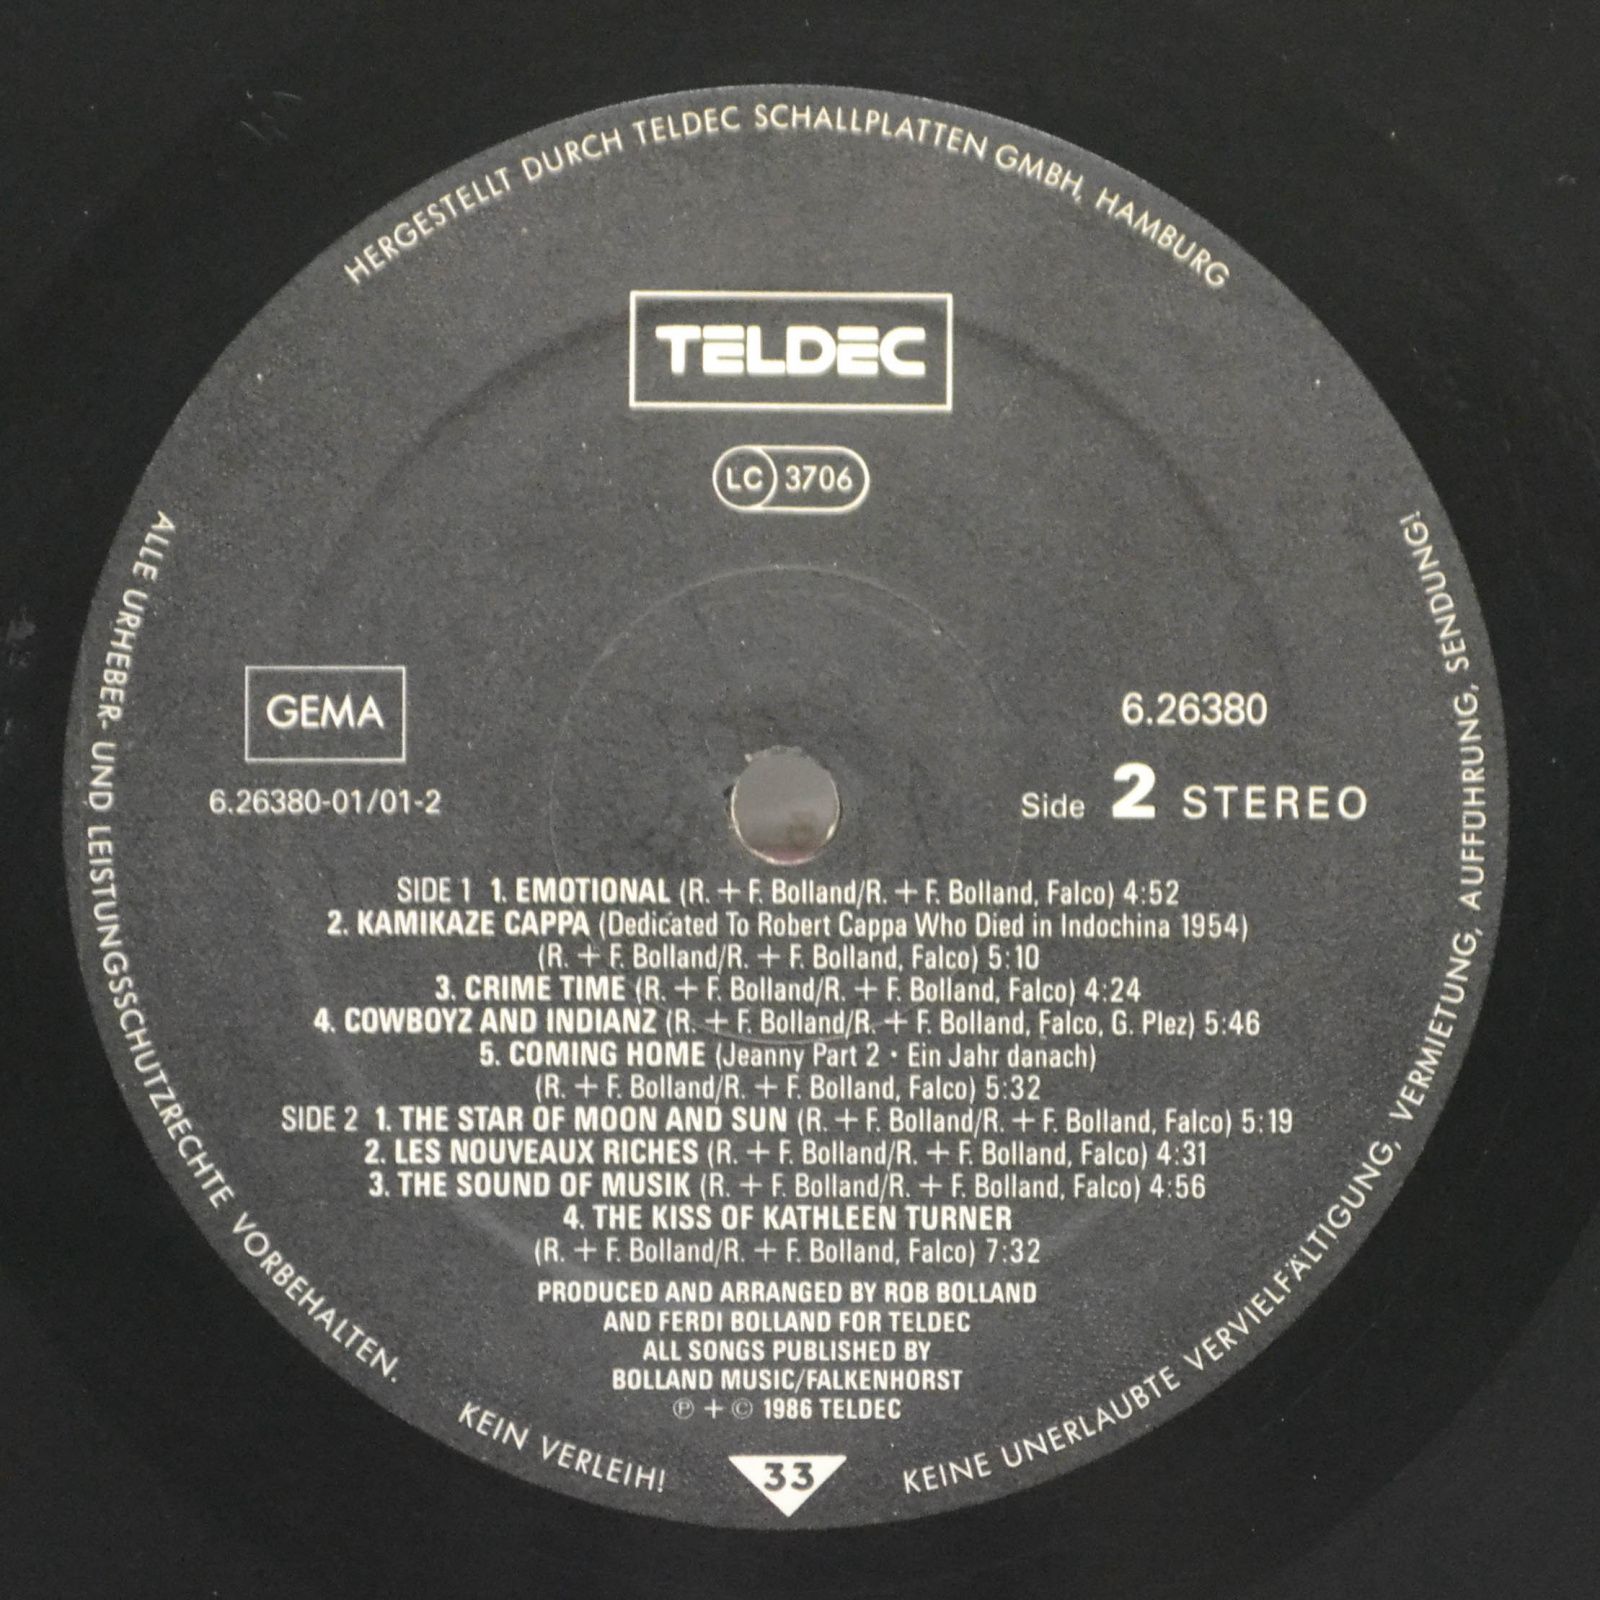 Falco — Emotional, 1986